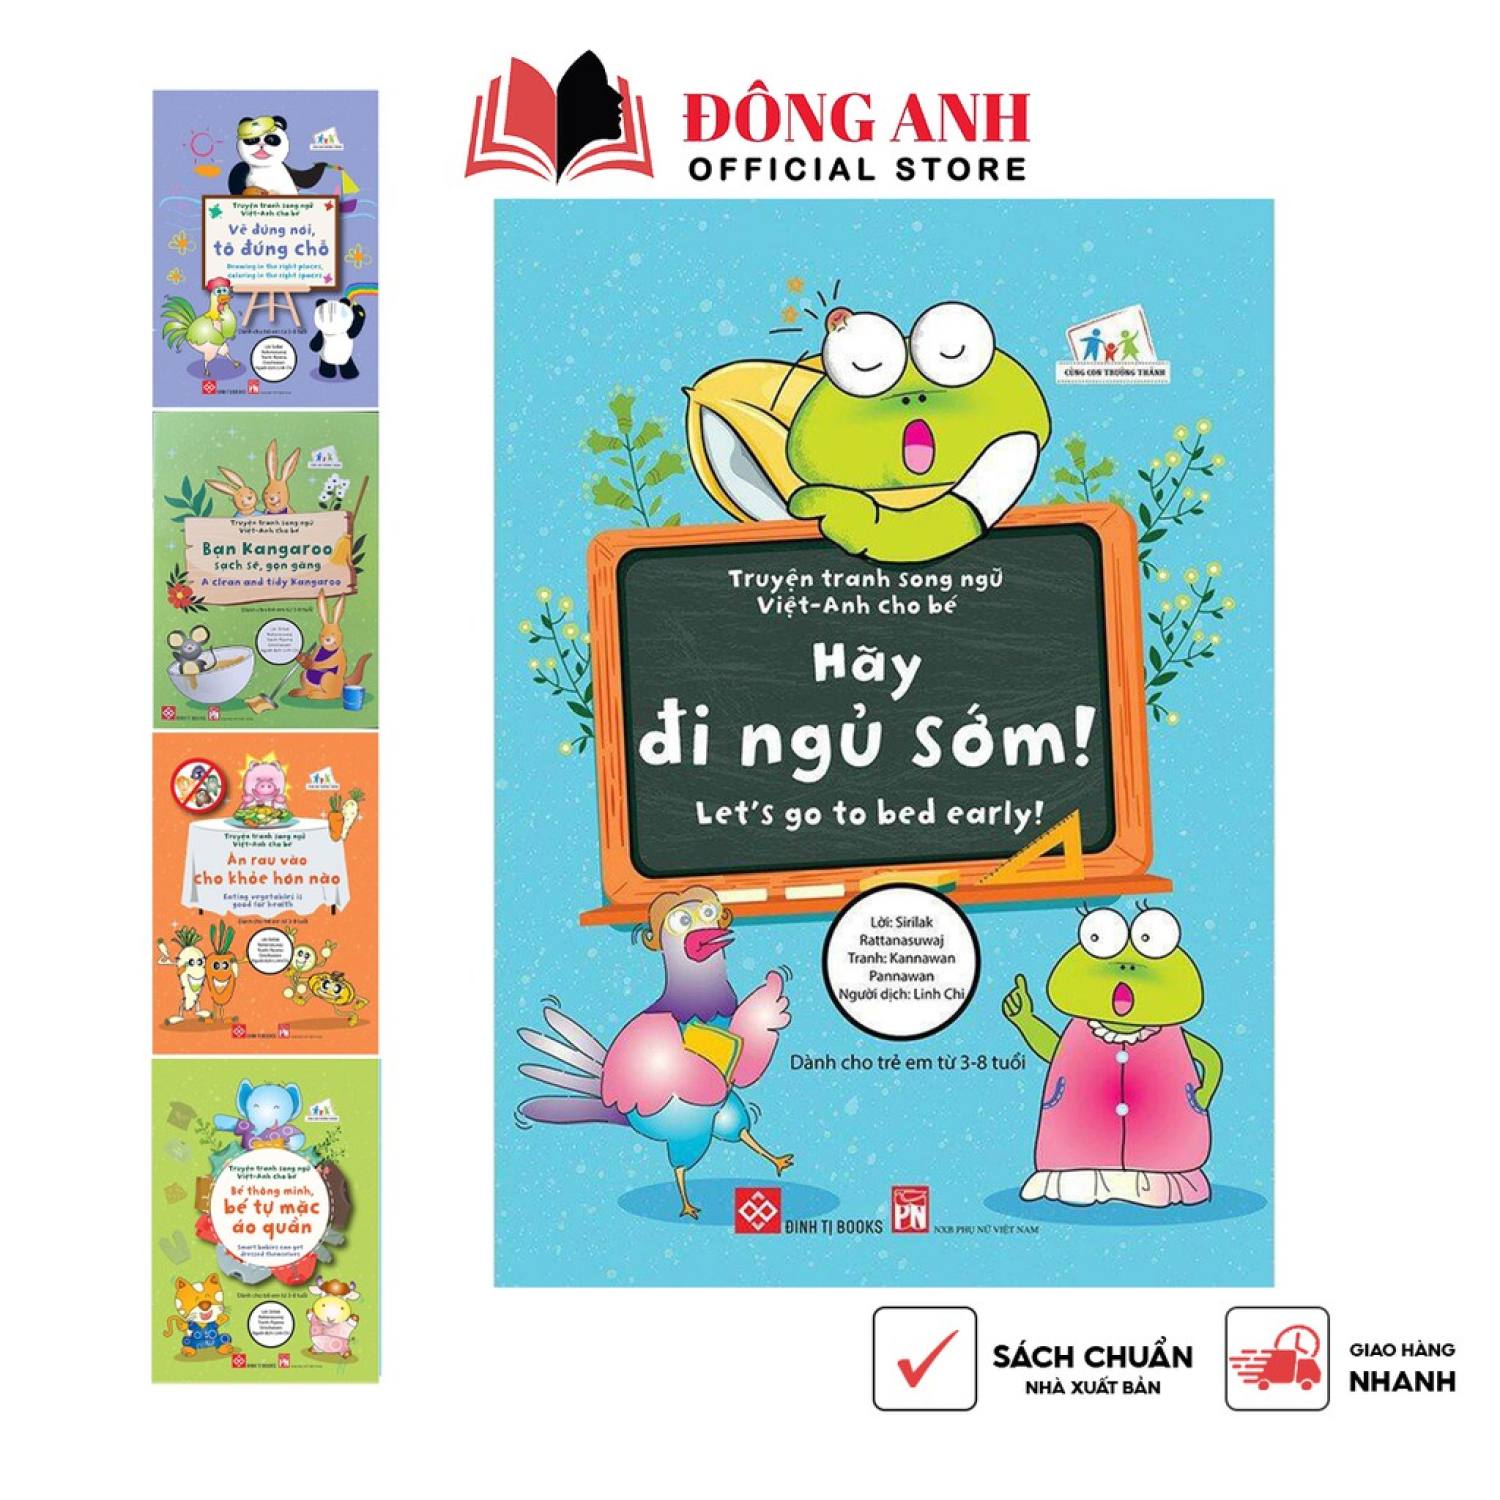 Sách - Lẻ 1 cuốn Truyện tranh song ngữ Việt - Anh cho bé từ 3-8 tuổi